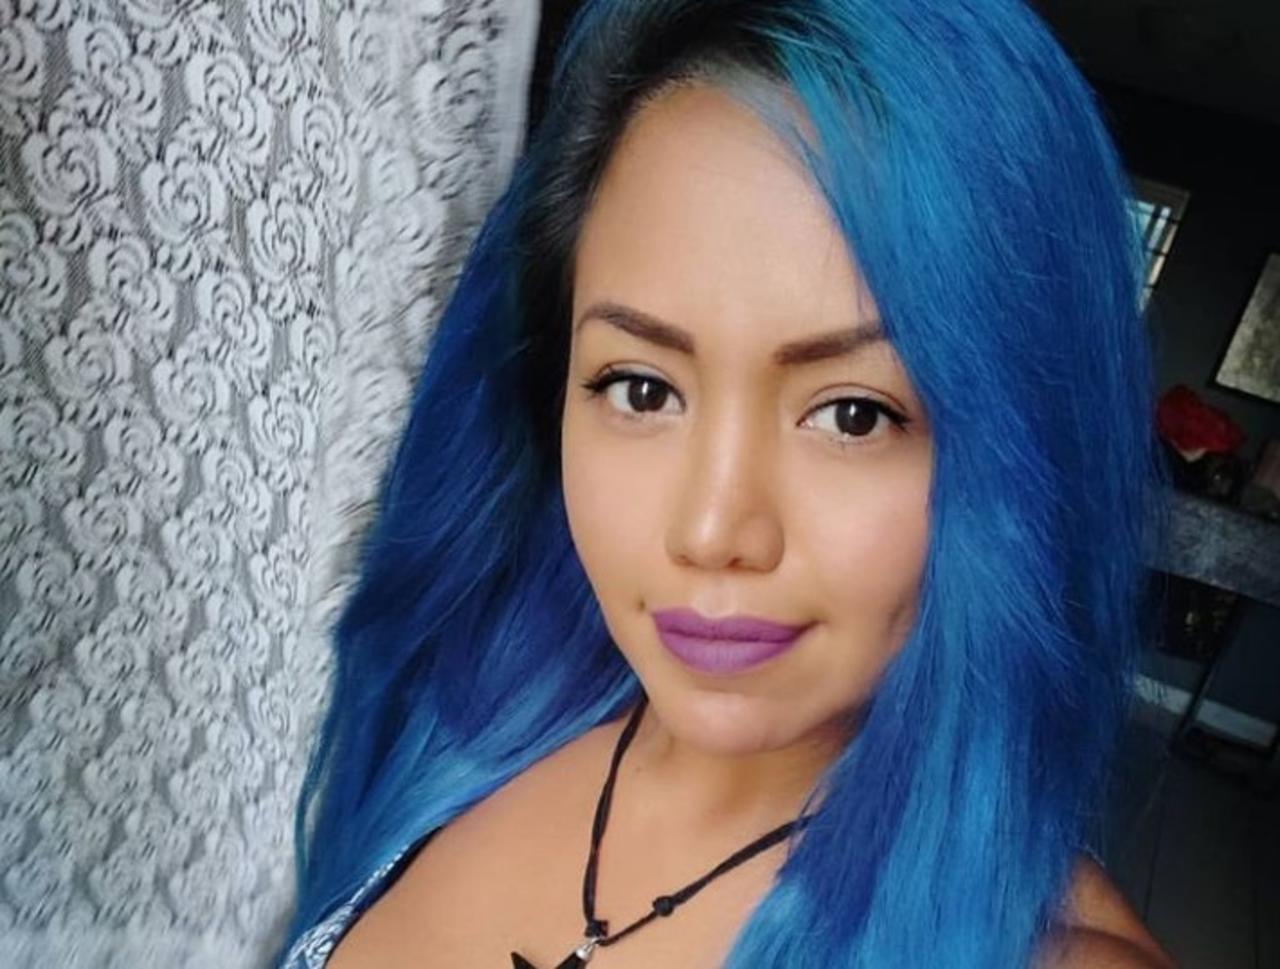 La actriz porno, Mujer Luna Bella, denunció que su padre la violó desde que tenía 7 años.